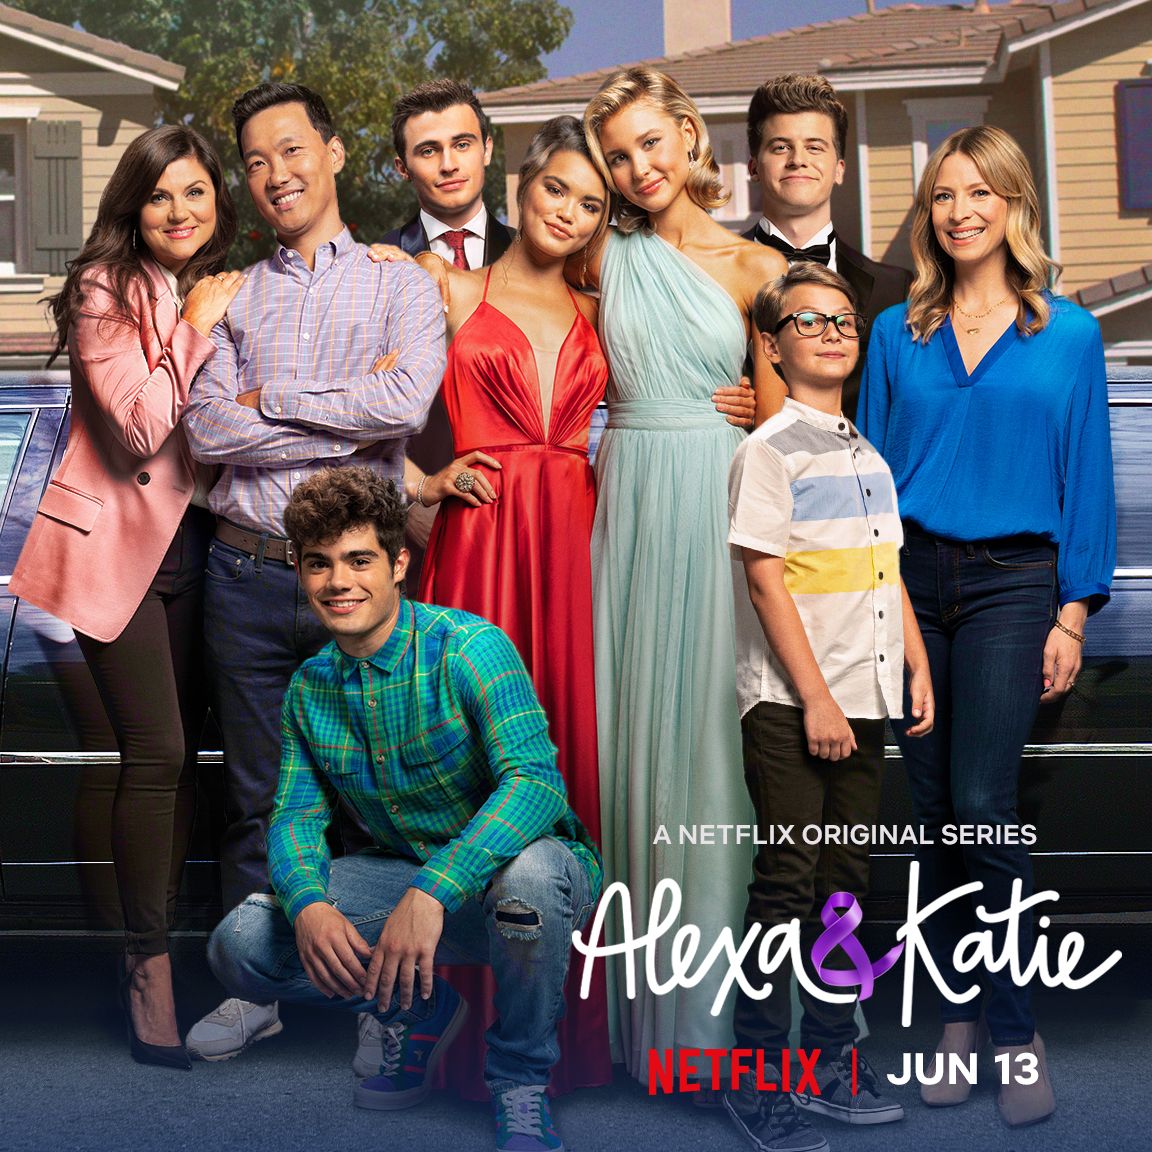 Exclusive: Netflix's "Alexa & Katie" Final Season to be Released in June and Look